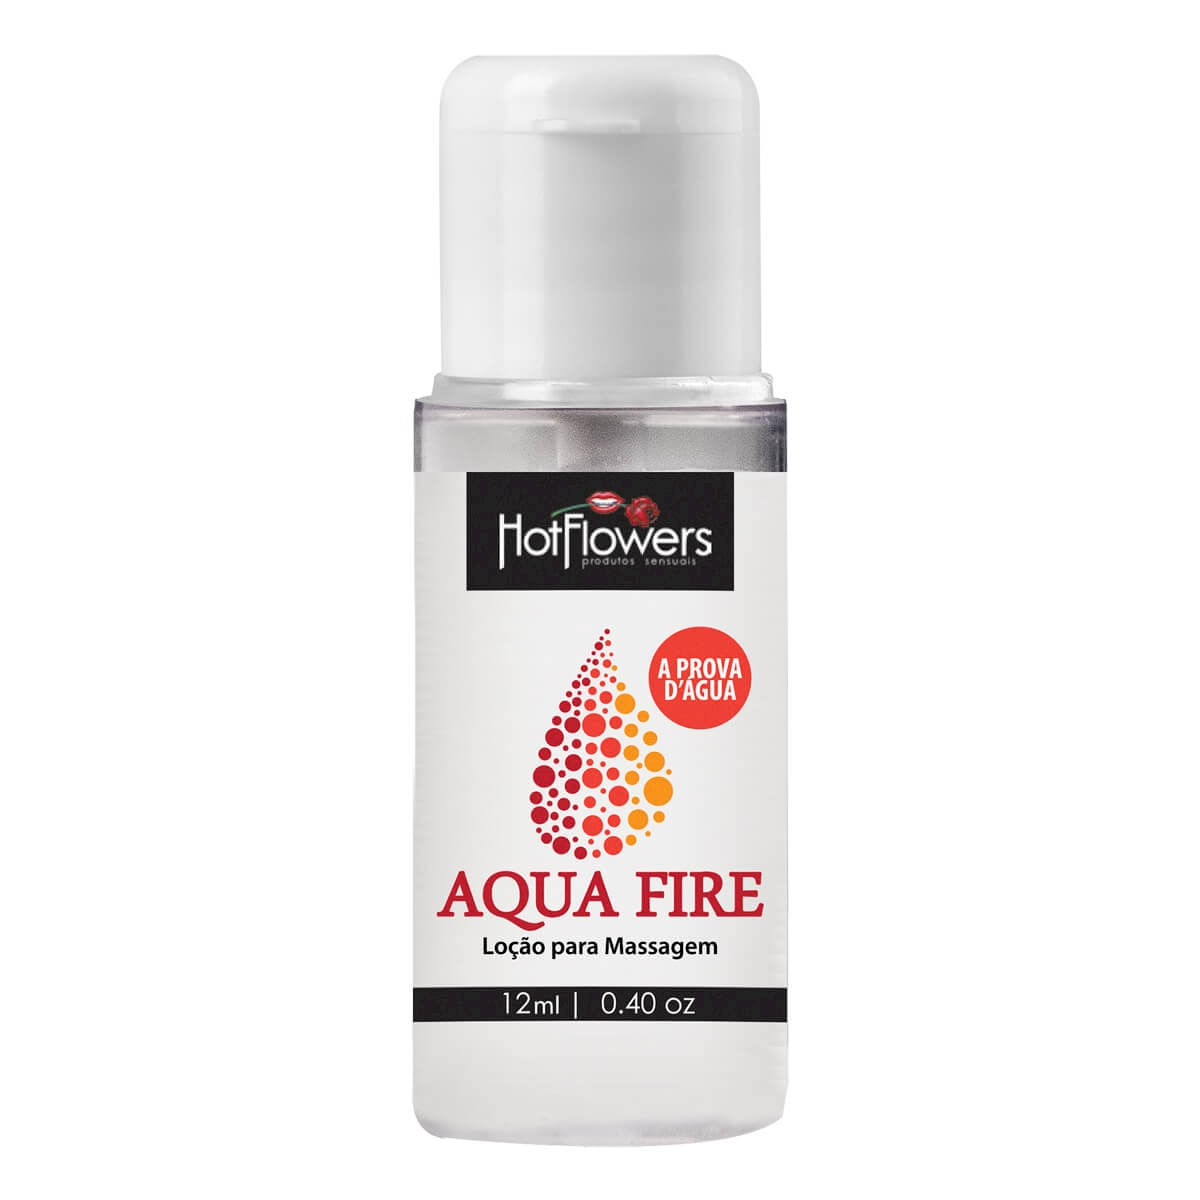 Loção para Massagem Aqua Fire 12ml Hot Flowers